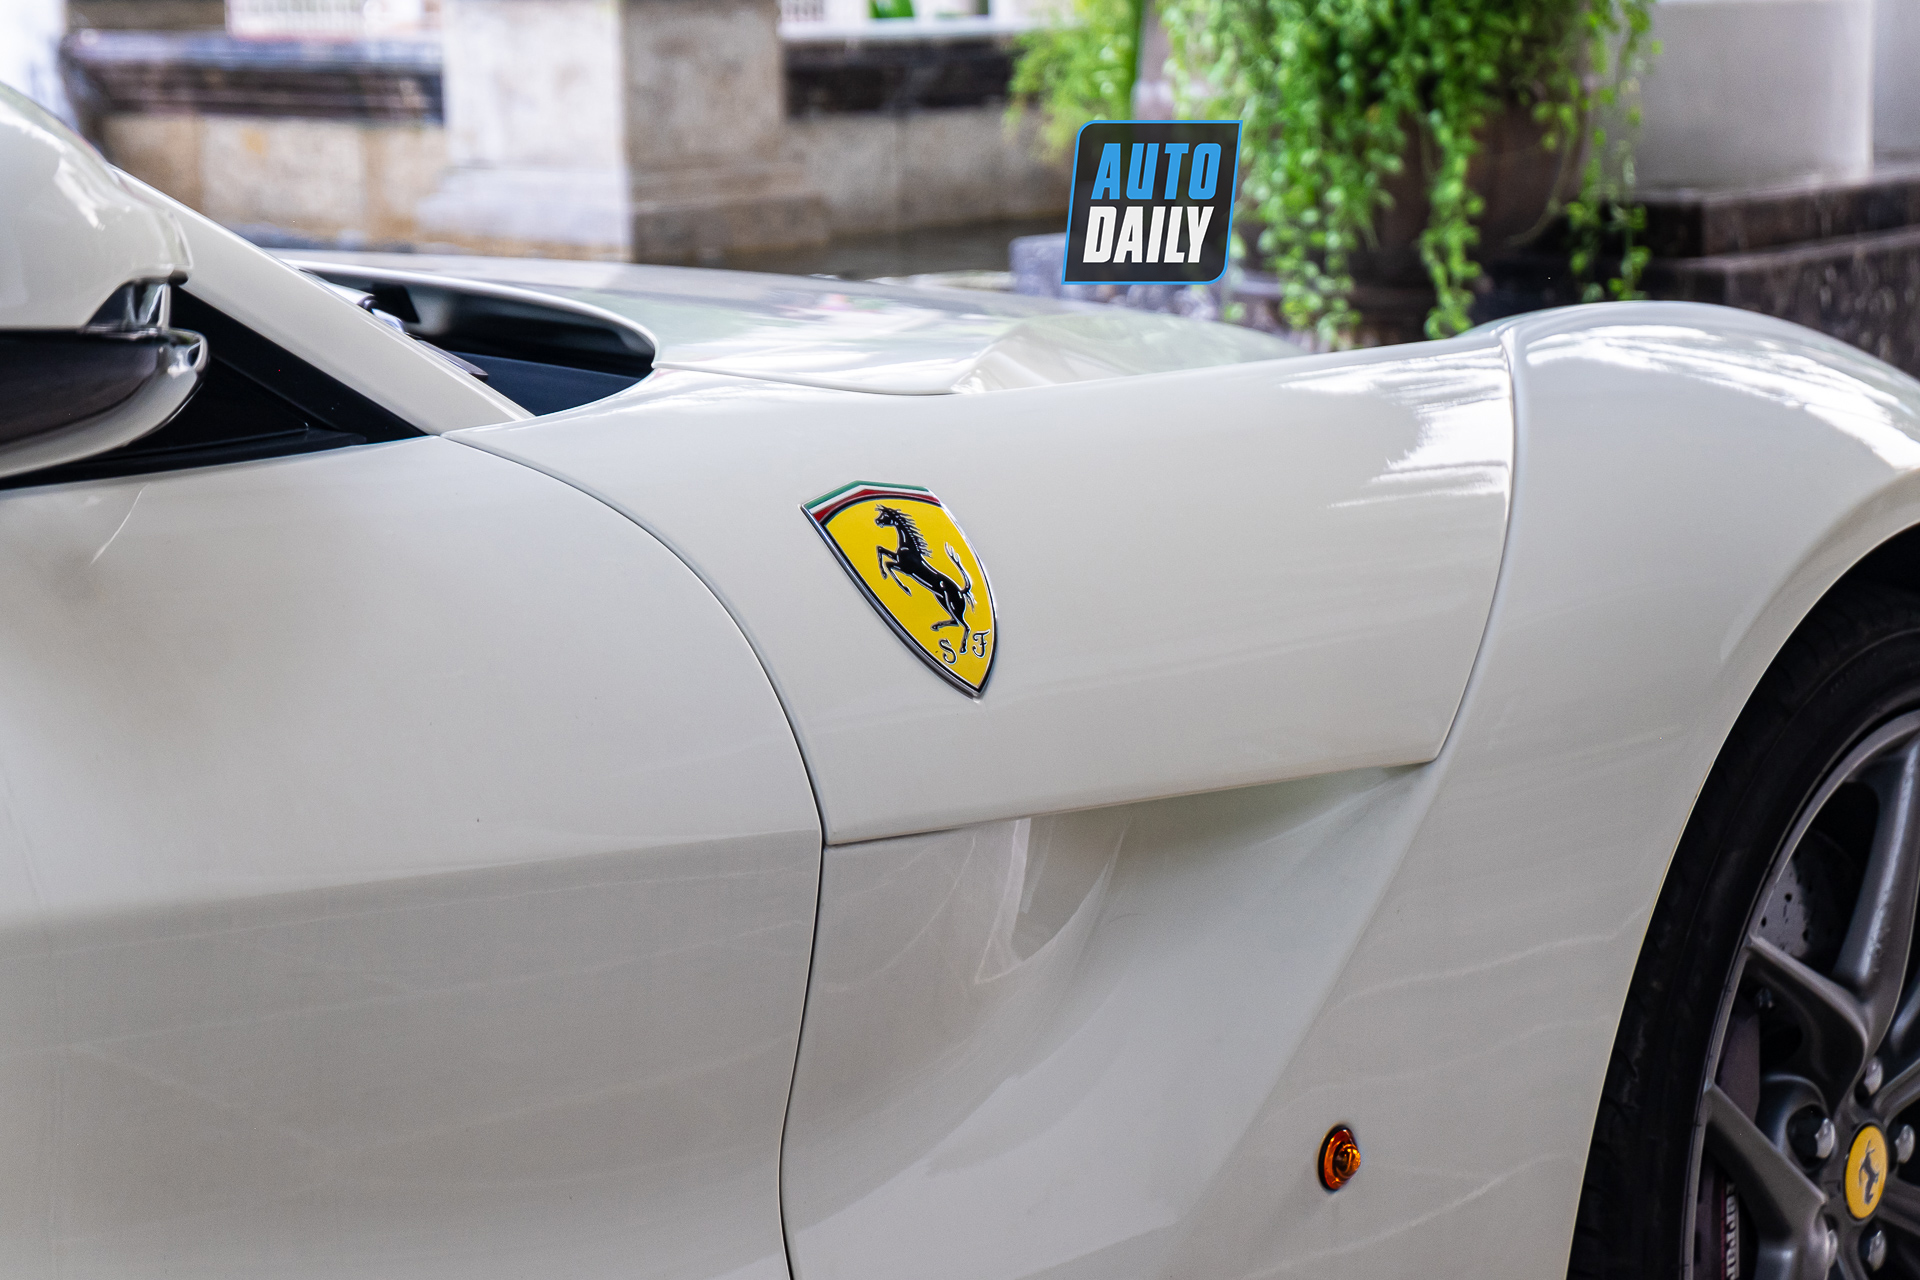 Ferrari F12 màu trắng độc nhất Việt Nam tái xuất trên phố, 6 năm chạy vỏn vẹn 255 km ferrari-f12-berlinetta-mau-trang-doc-nhat-cafeautovn-3.JPG